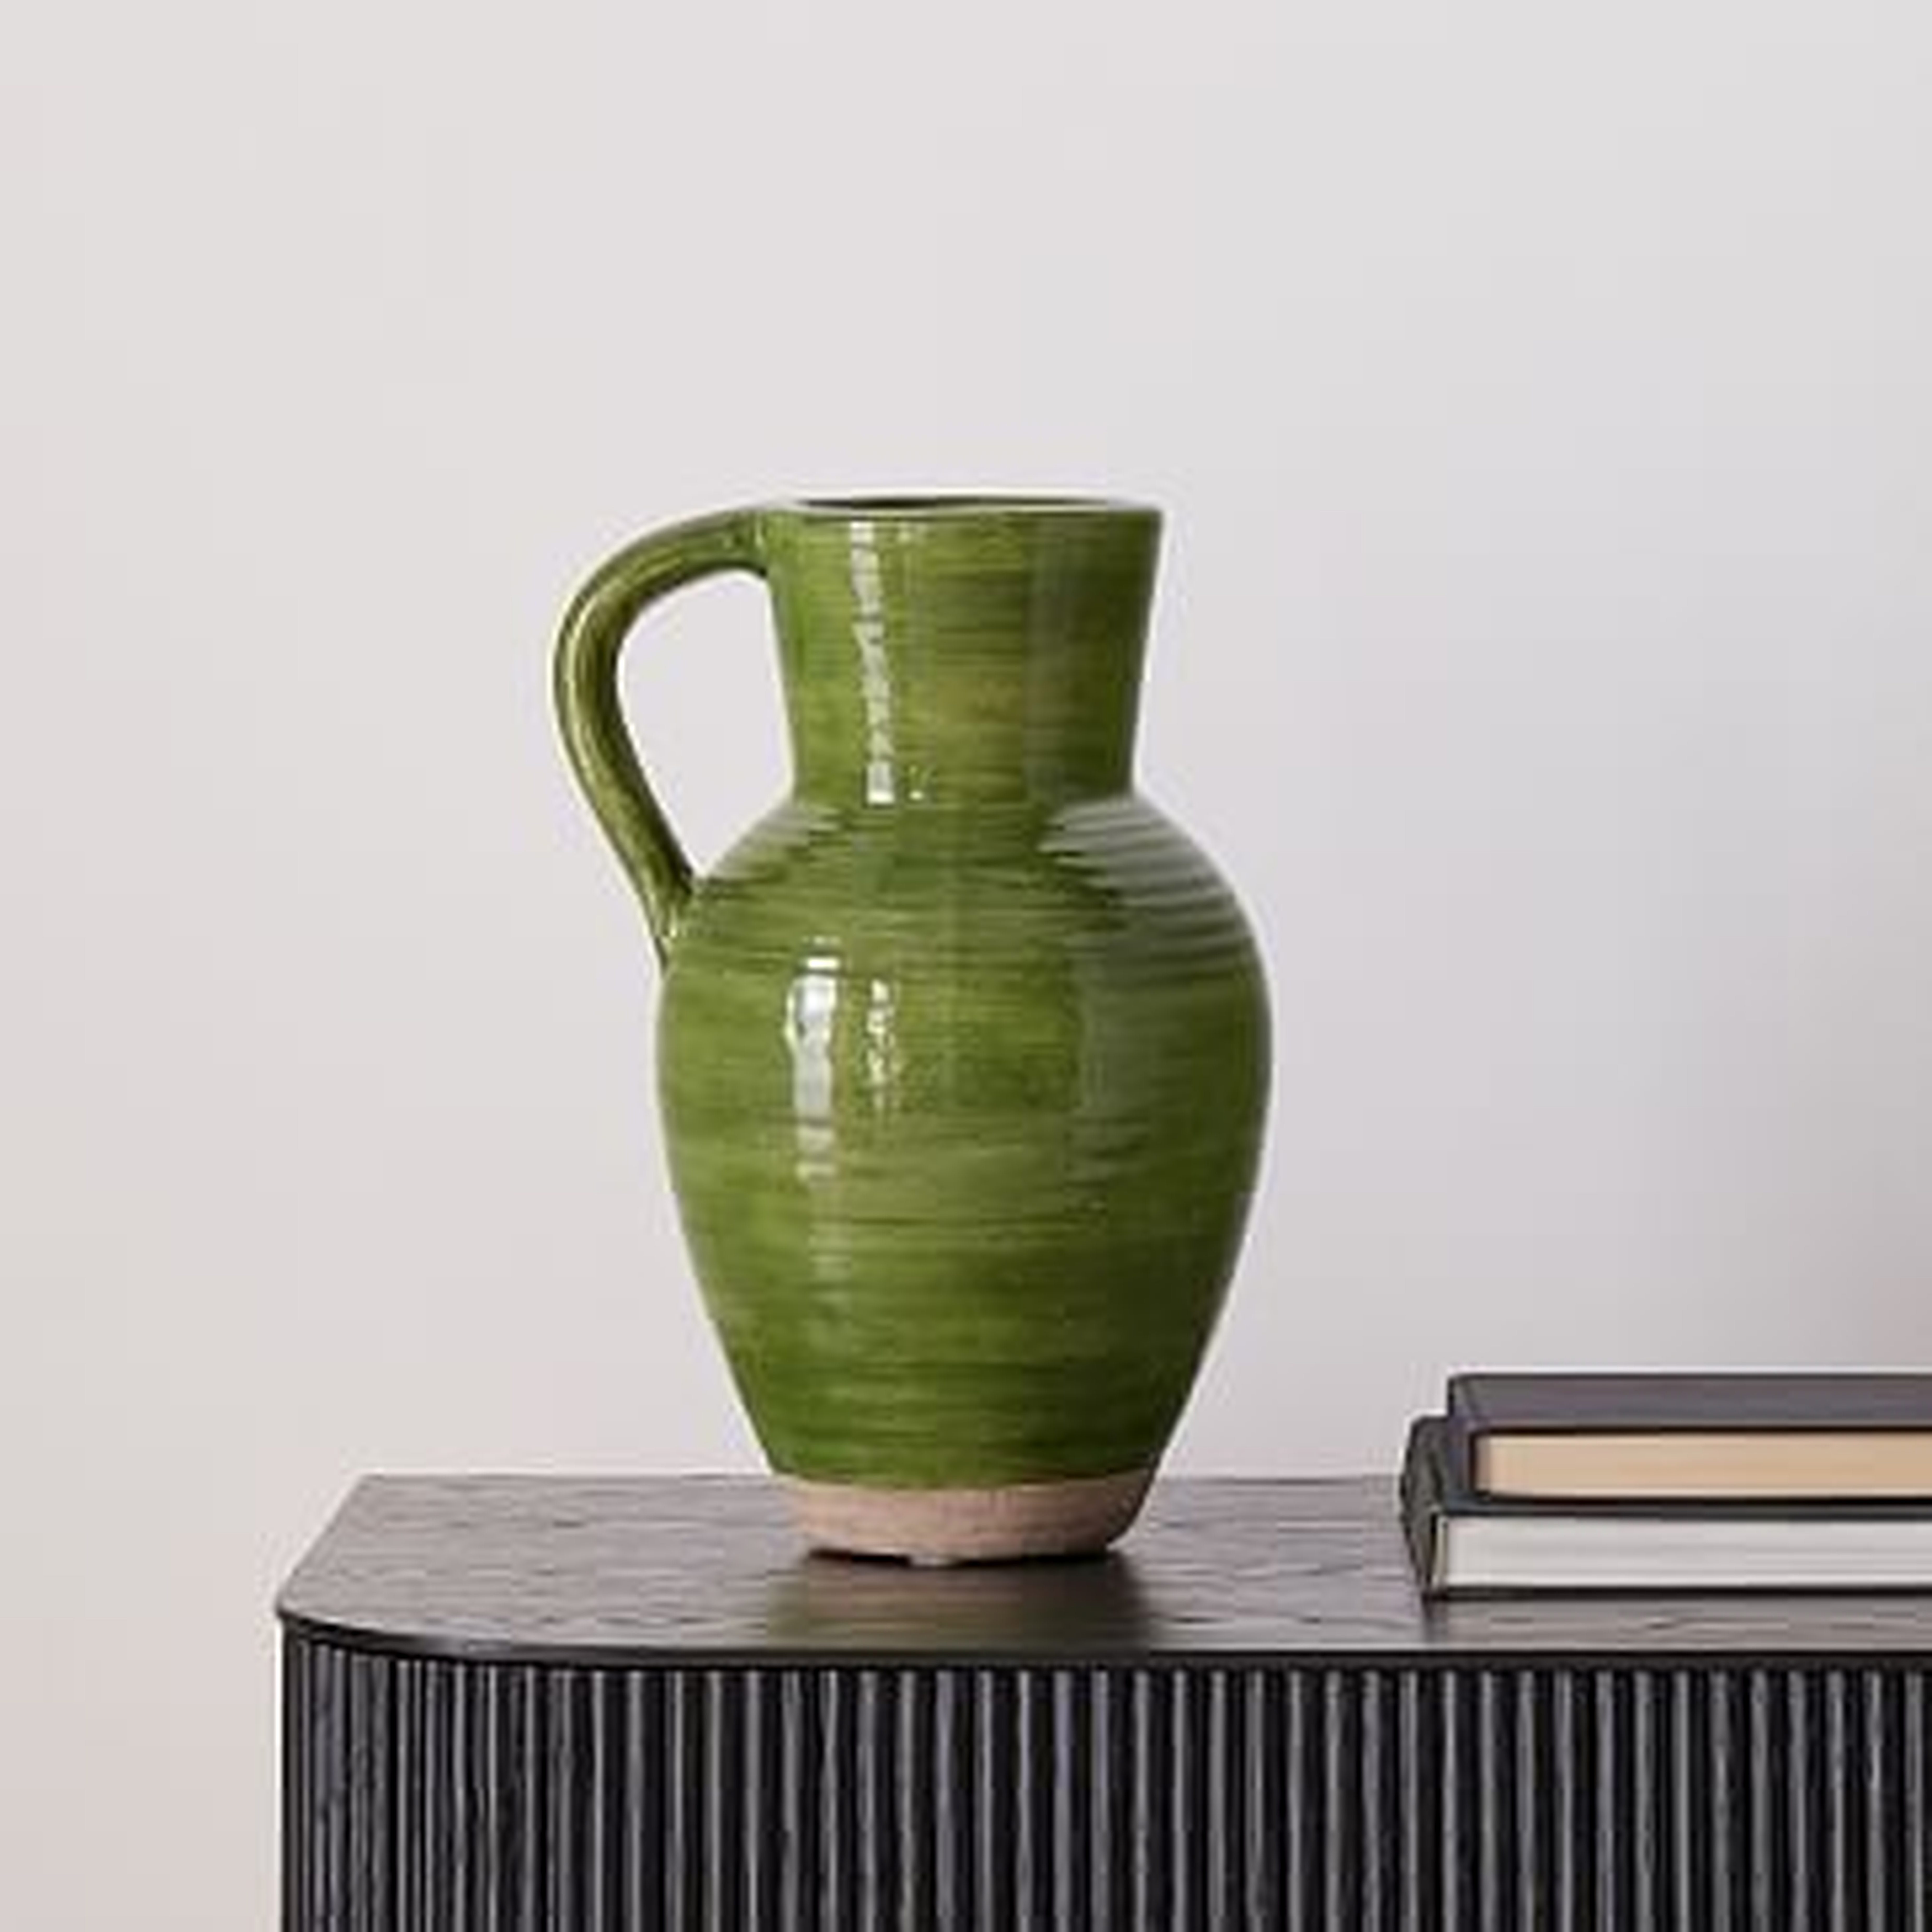 Jug Vases, Medium Vase, Dark Green, Ceramic, 13 in High - West Elm